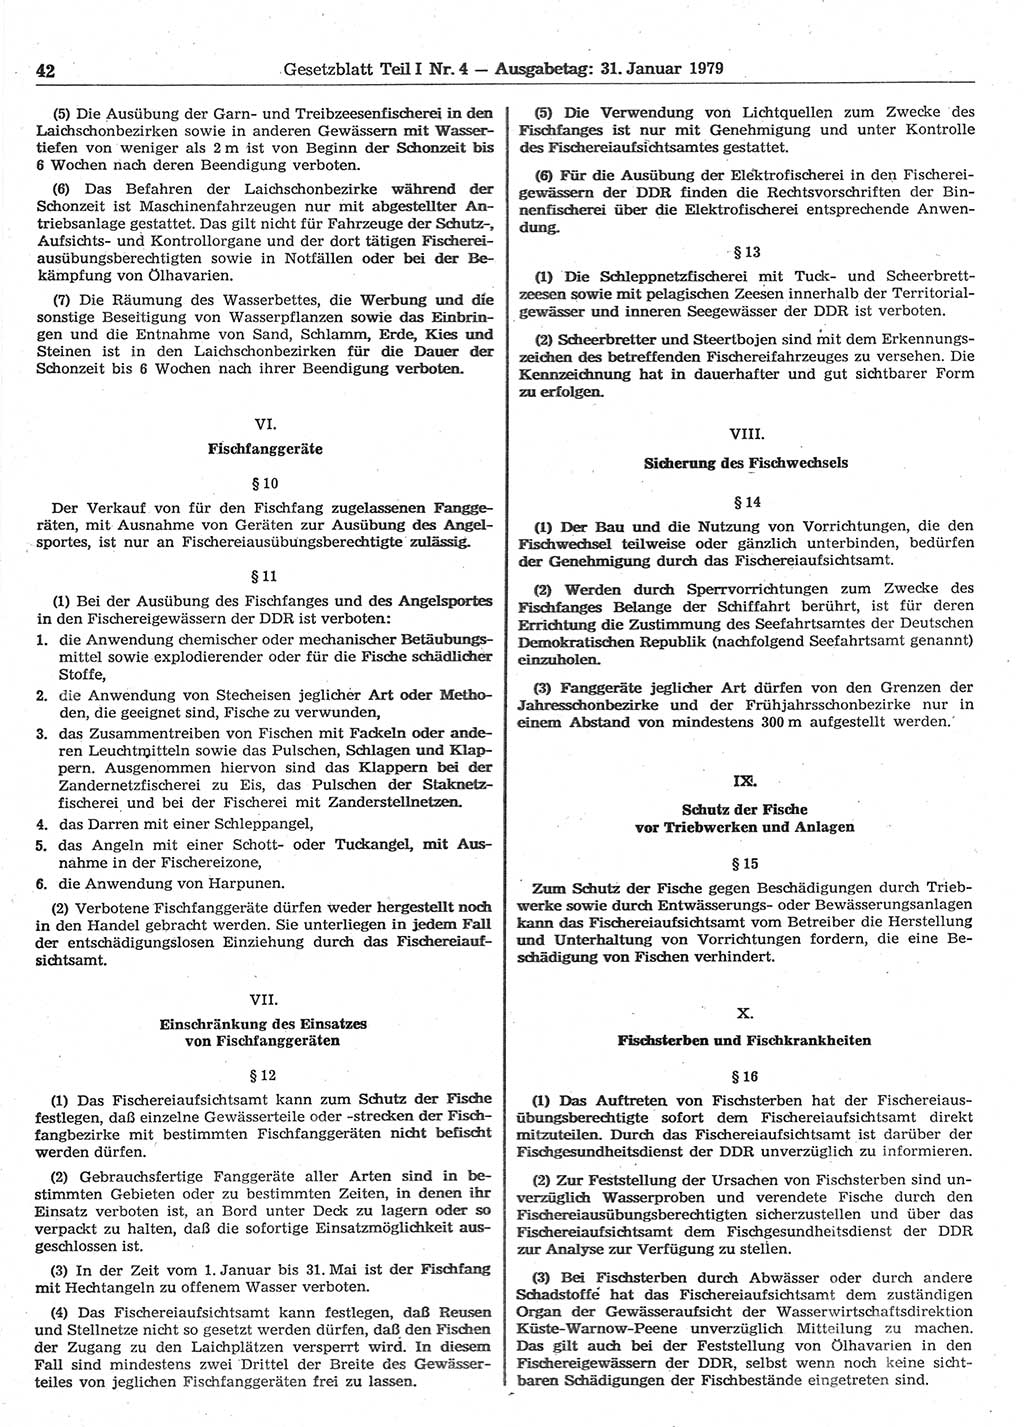 Gesetzblatt (GBl.) der Deutschen Demokratischen Republik (DDR) Teil Ⅰ 1979, Seite 42 (GBl. DDR Ⅰ 1979, S. 42)